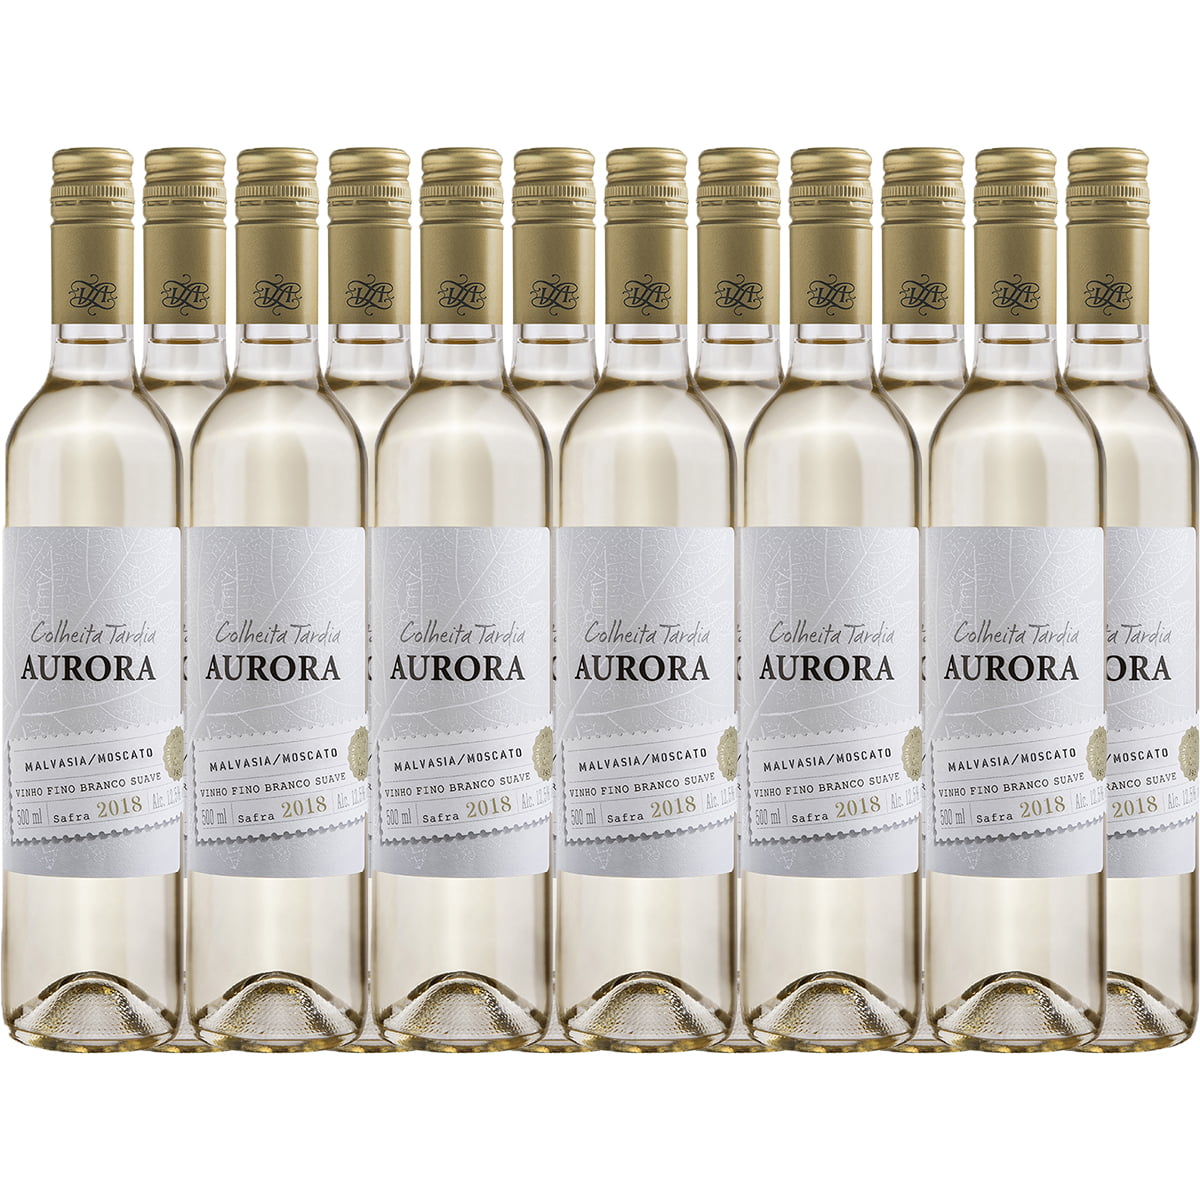 Vinho Aurora Colheita Tardia Malvasia/Moscato Branco Suave 500ml C/12